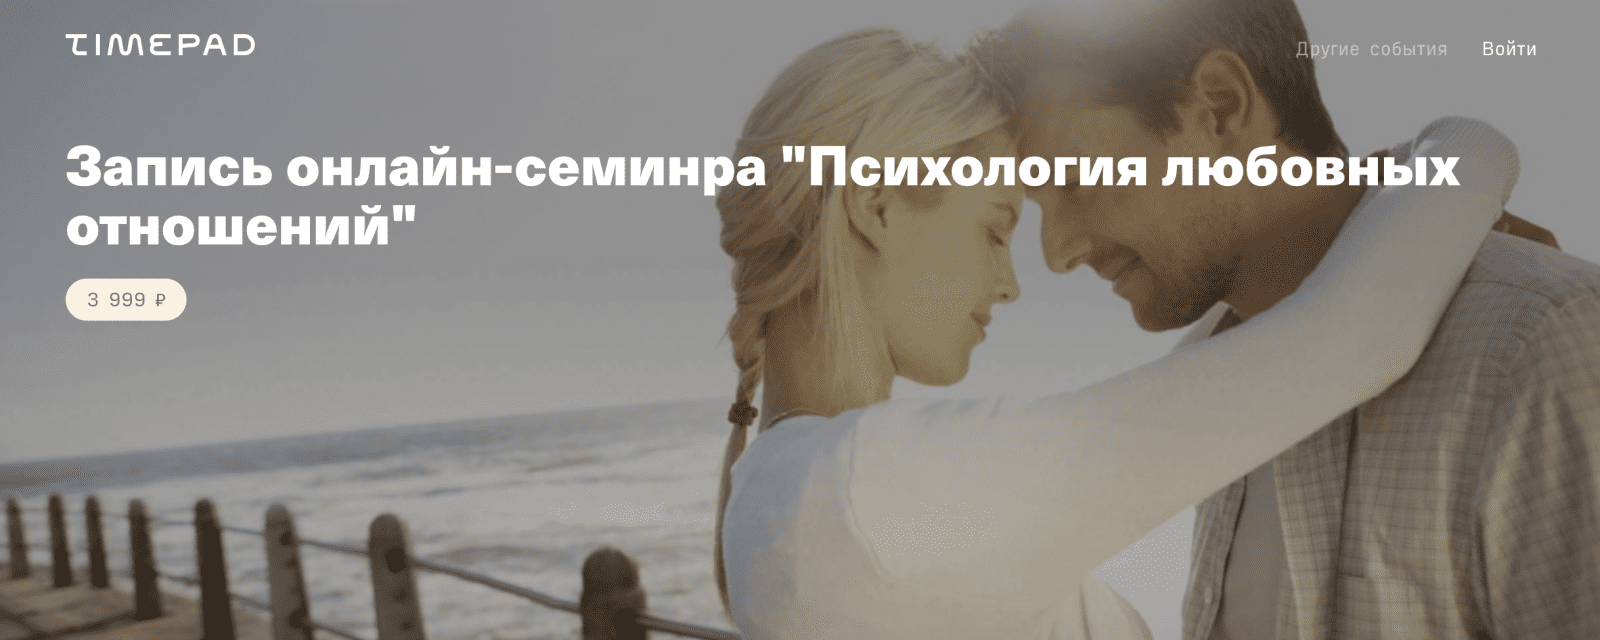 Изображение [Timepad] Владимир Рябов - Психология любовных отношений (2021) в посте 252978